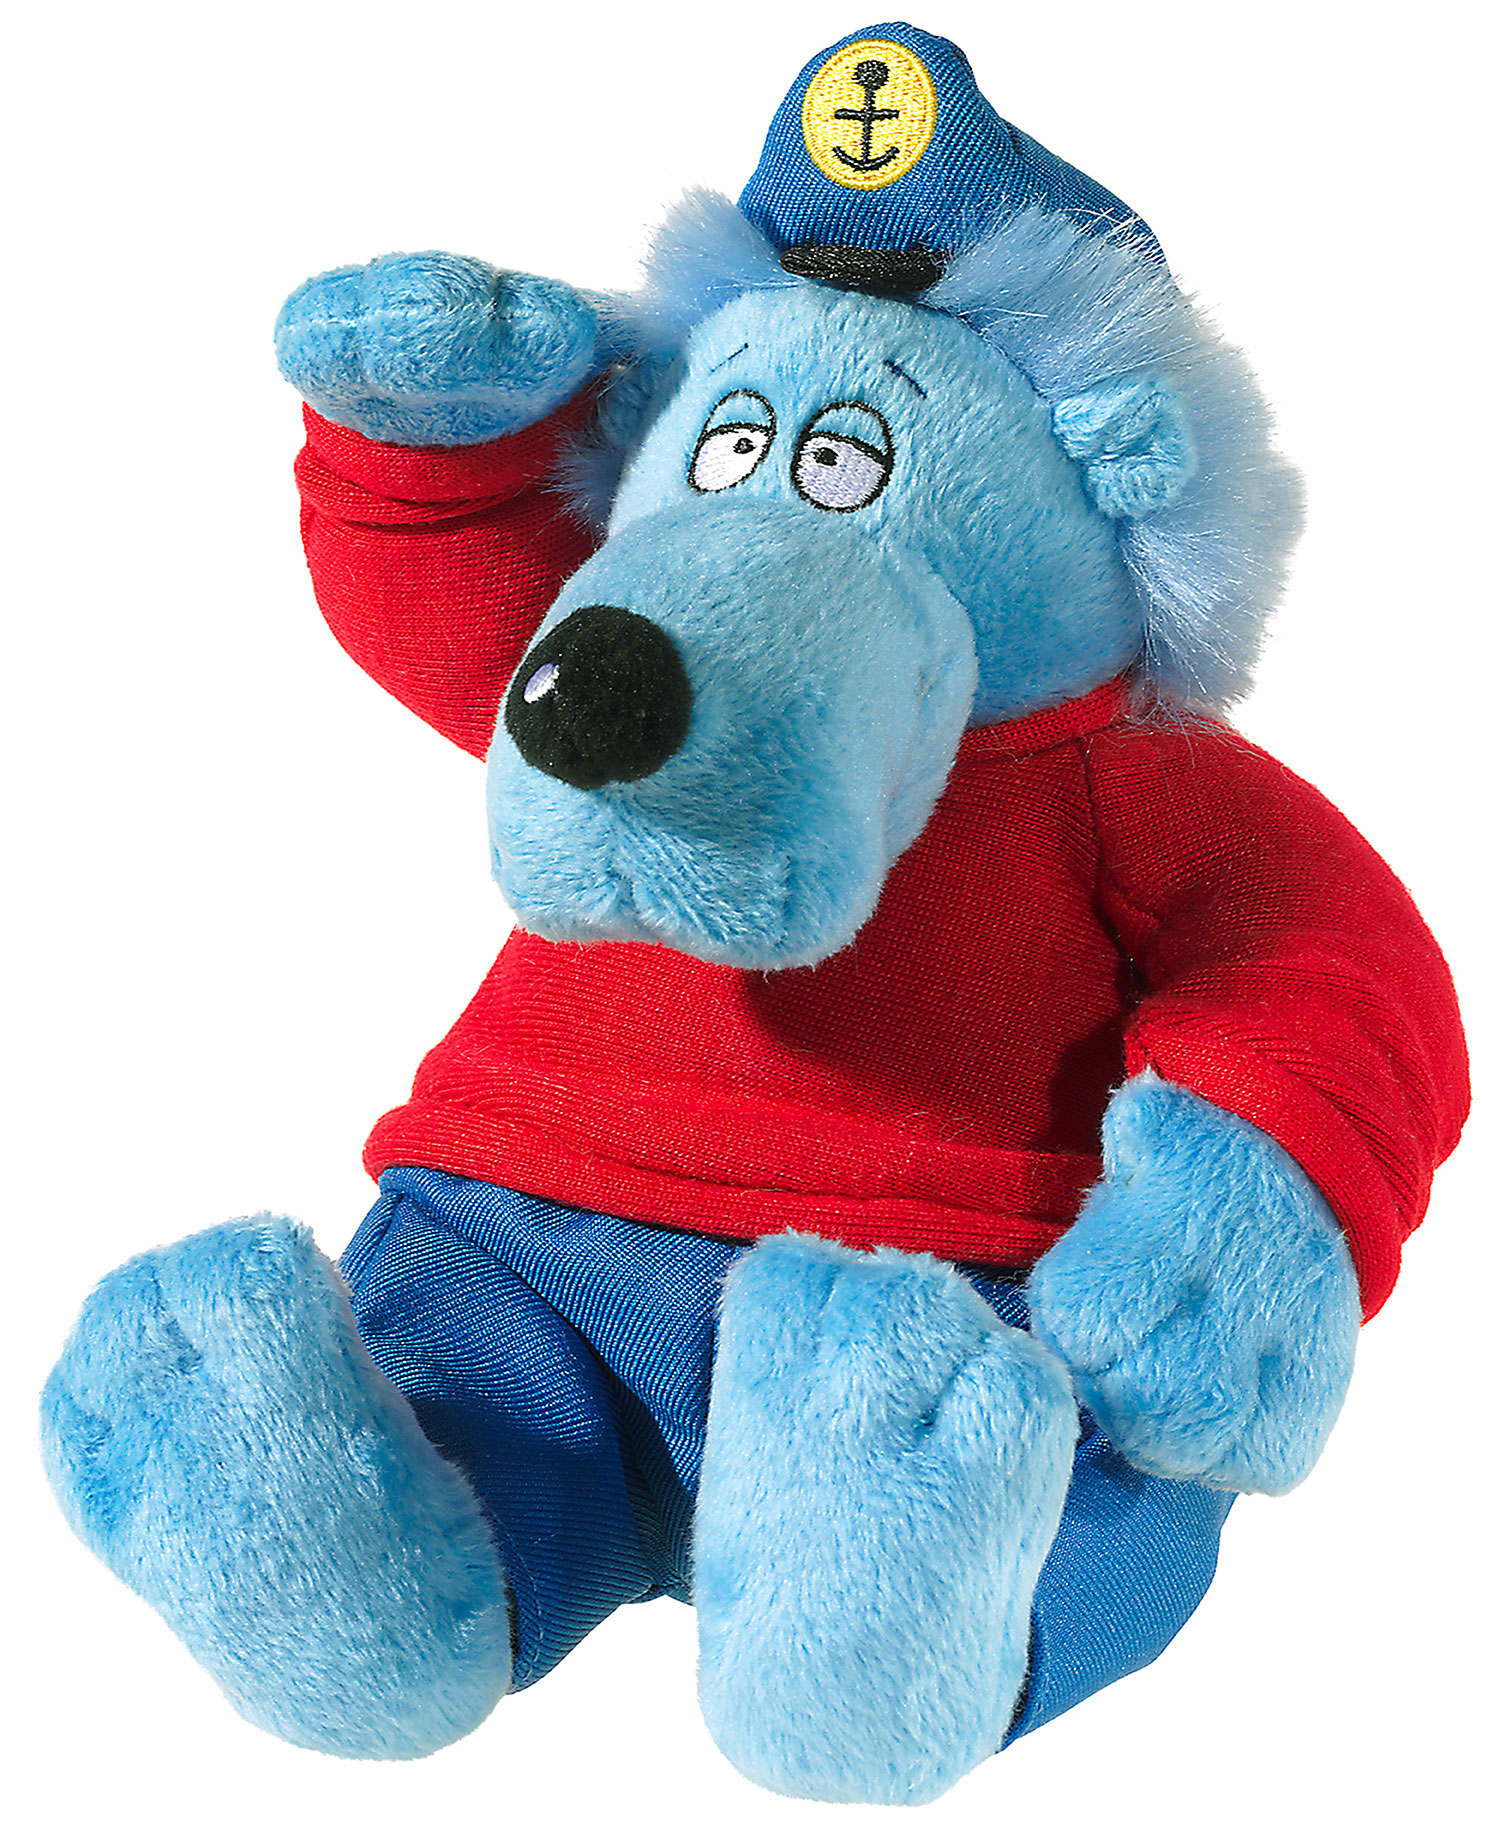 Heunec Käptn Blaubär, der Geschichtenerzähler, sitzend in kuscheligen 20cm